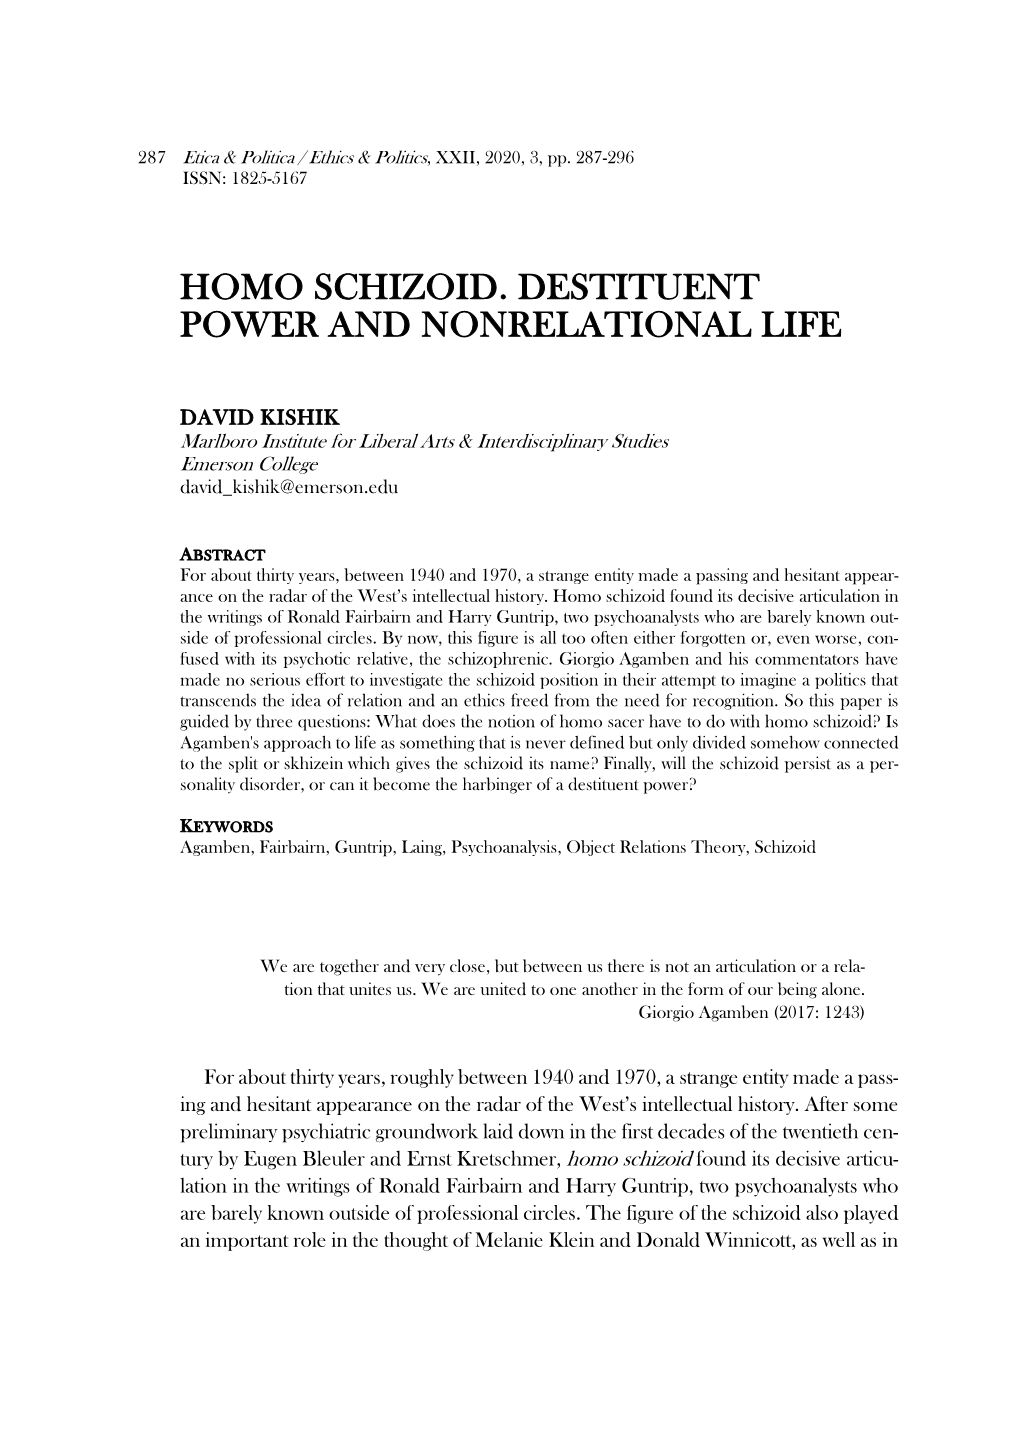 Homo Schizoid. Destituent Power and Nonrelational Life